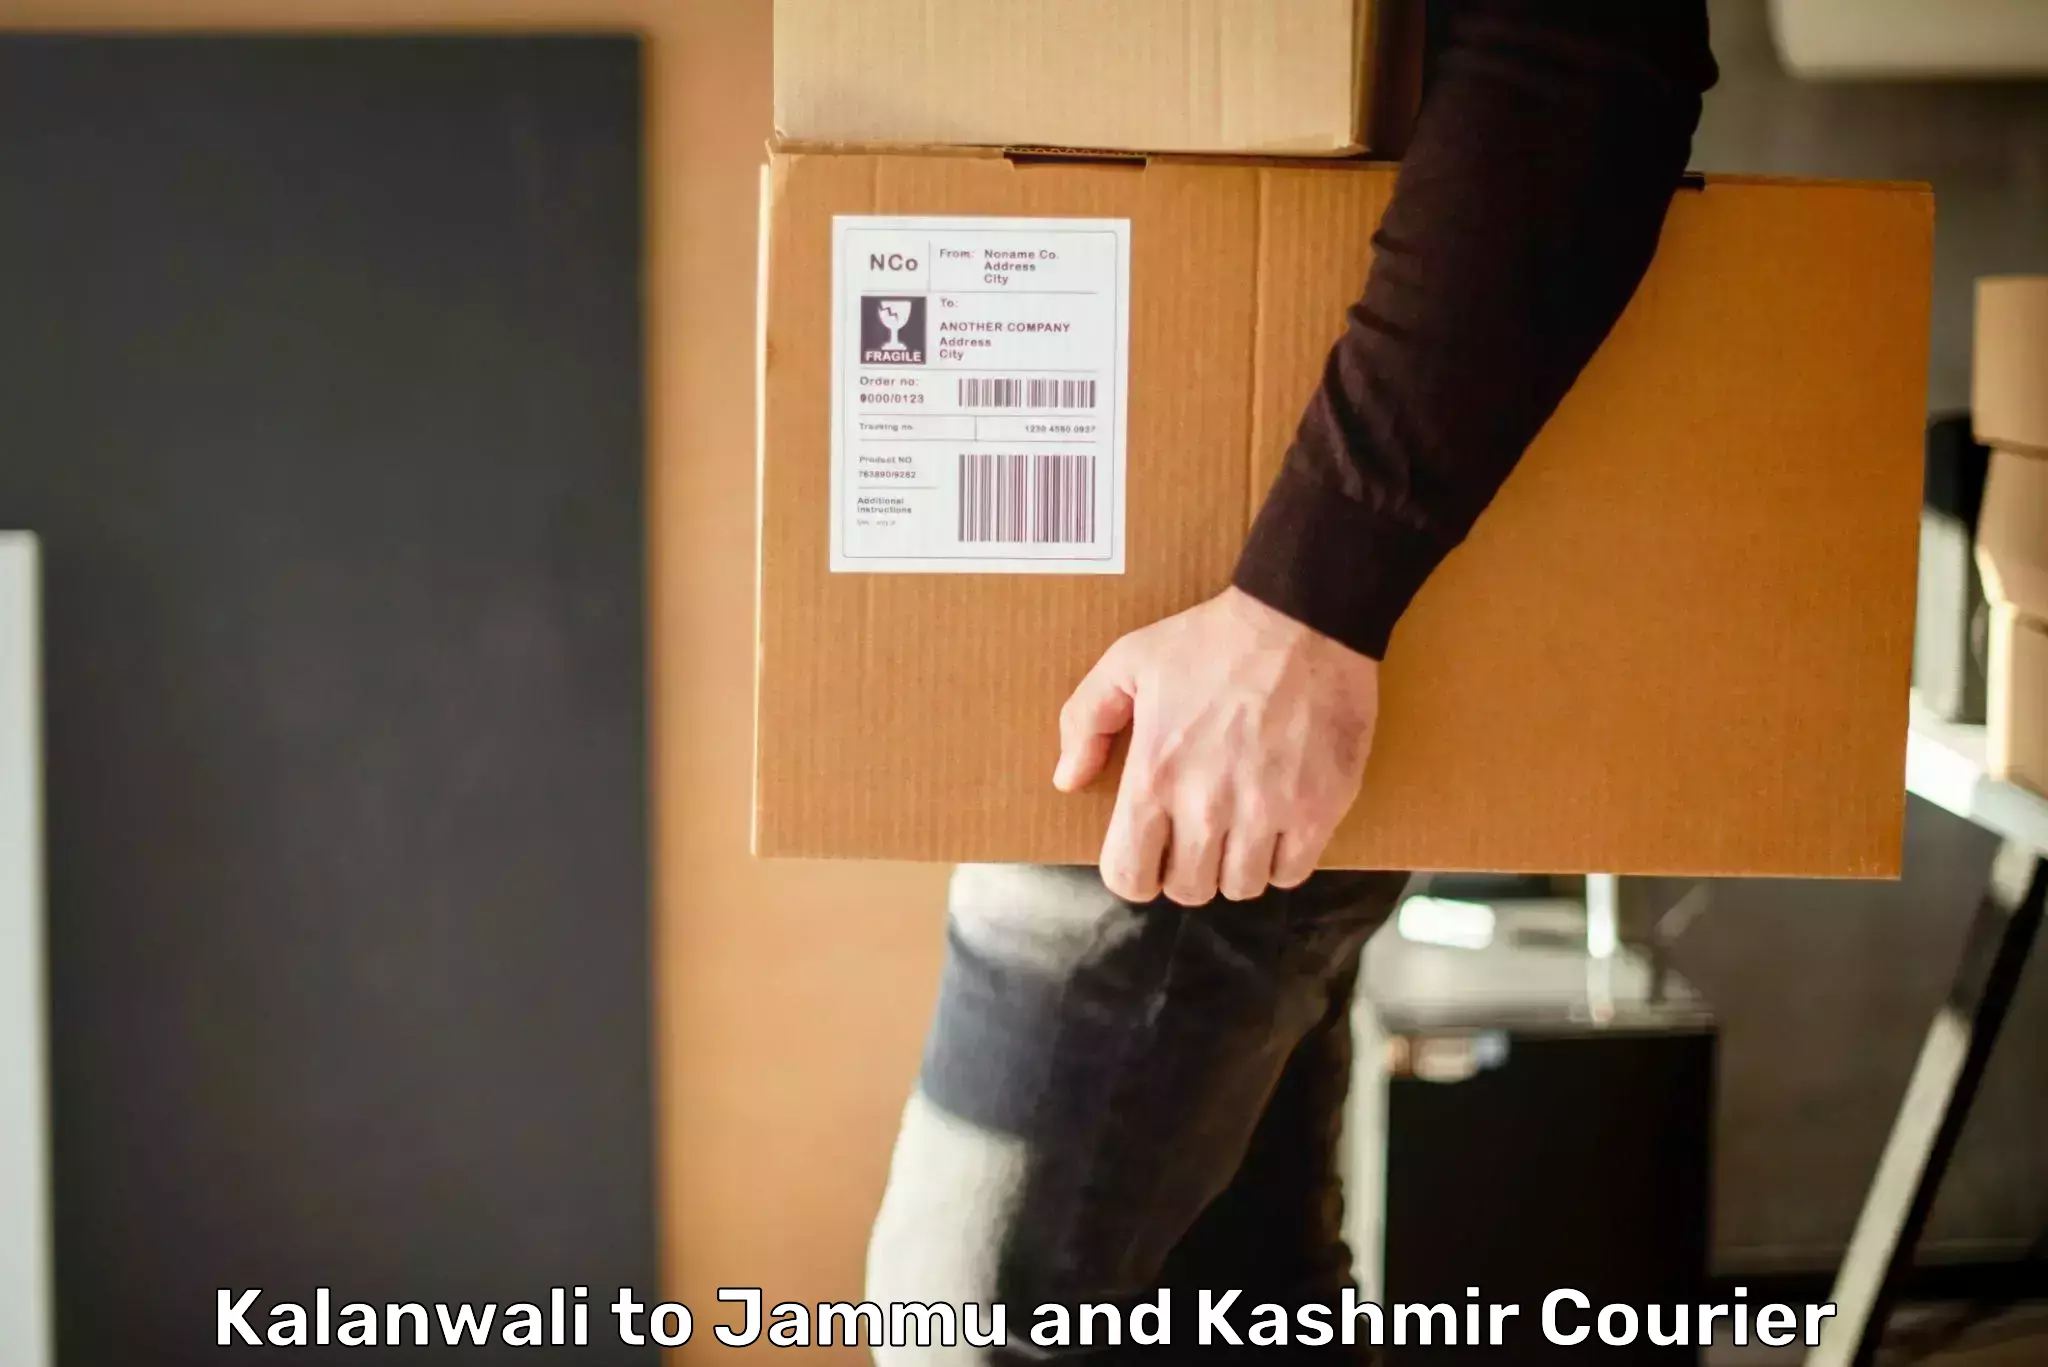 Courier app Kalanwali to Jammu and Kashmir